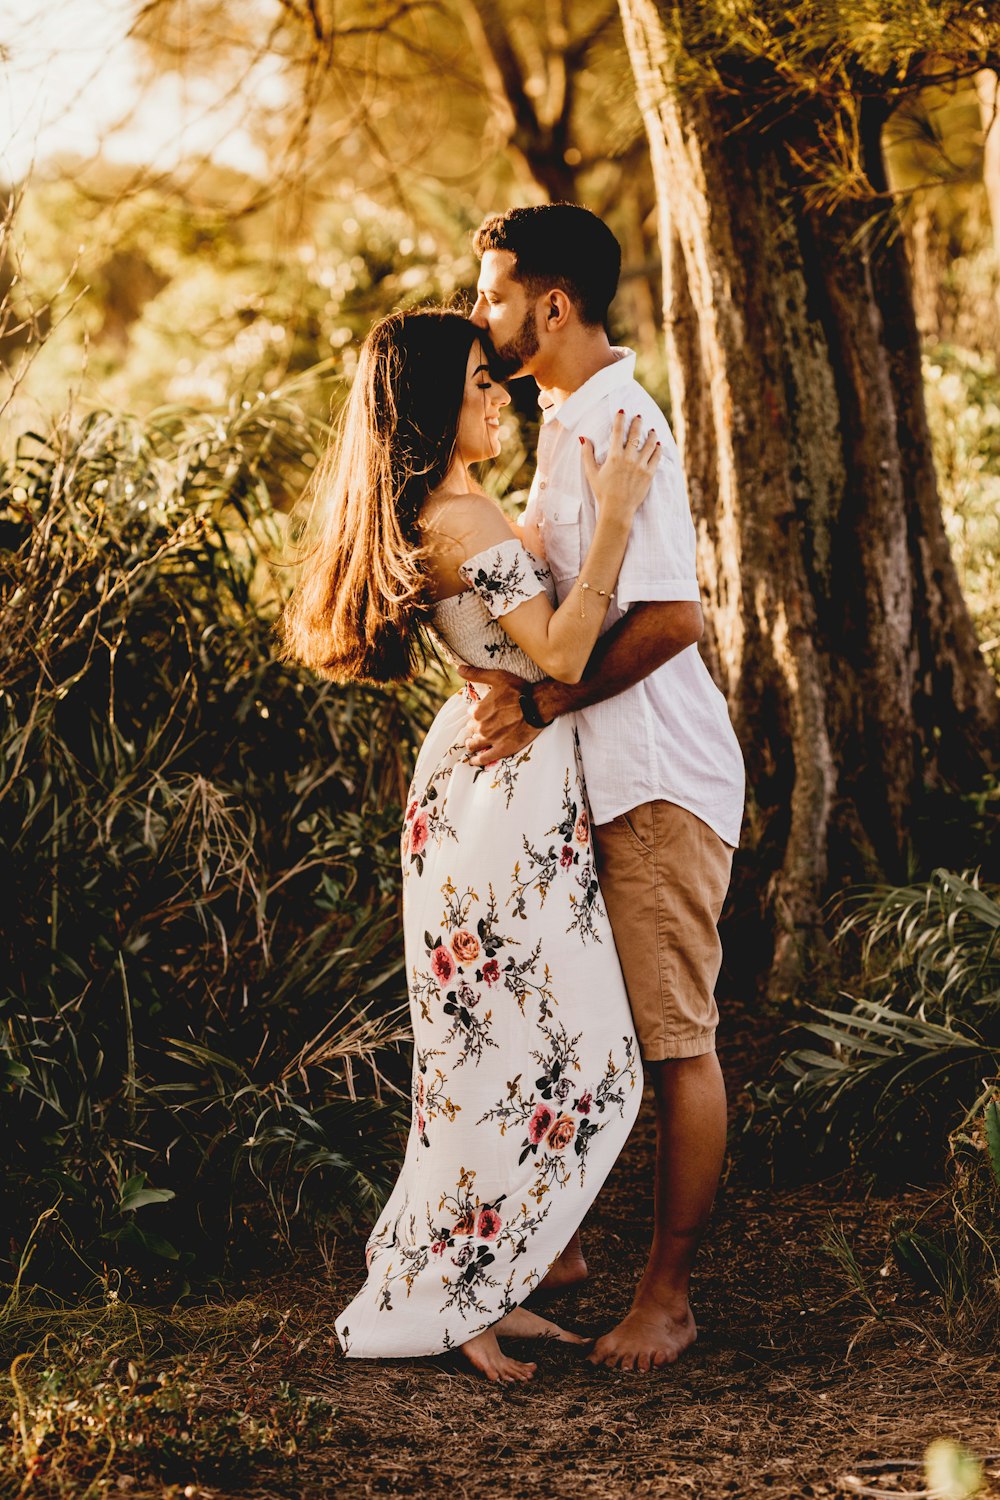 homme et femme s’embrassent près de l’arbre brun pendant la journée